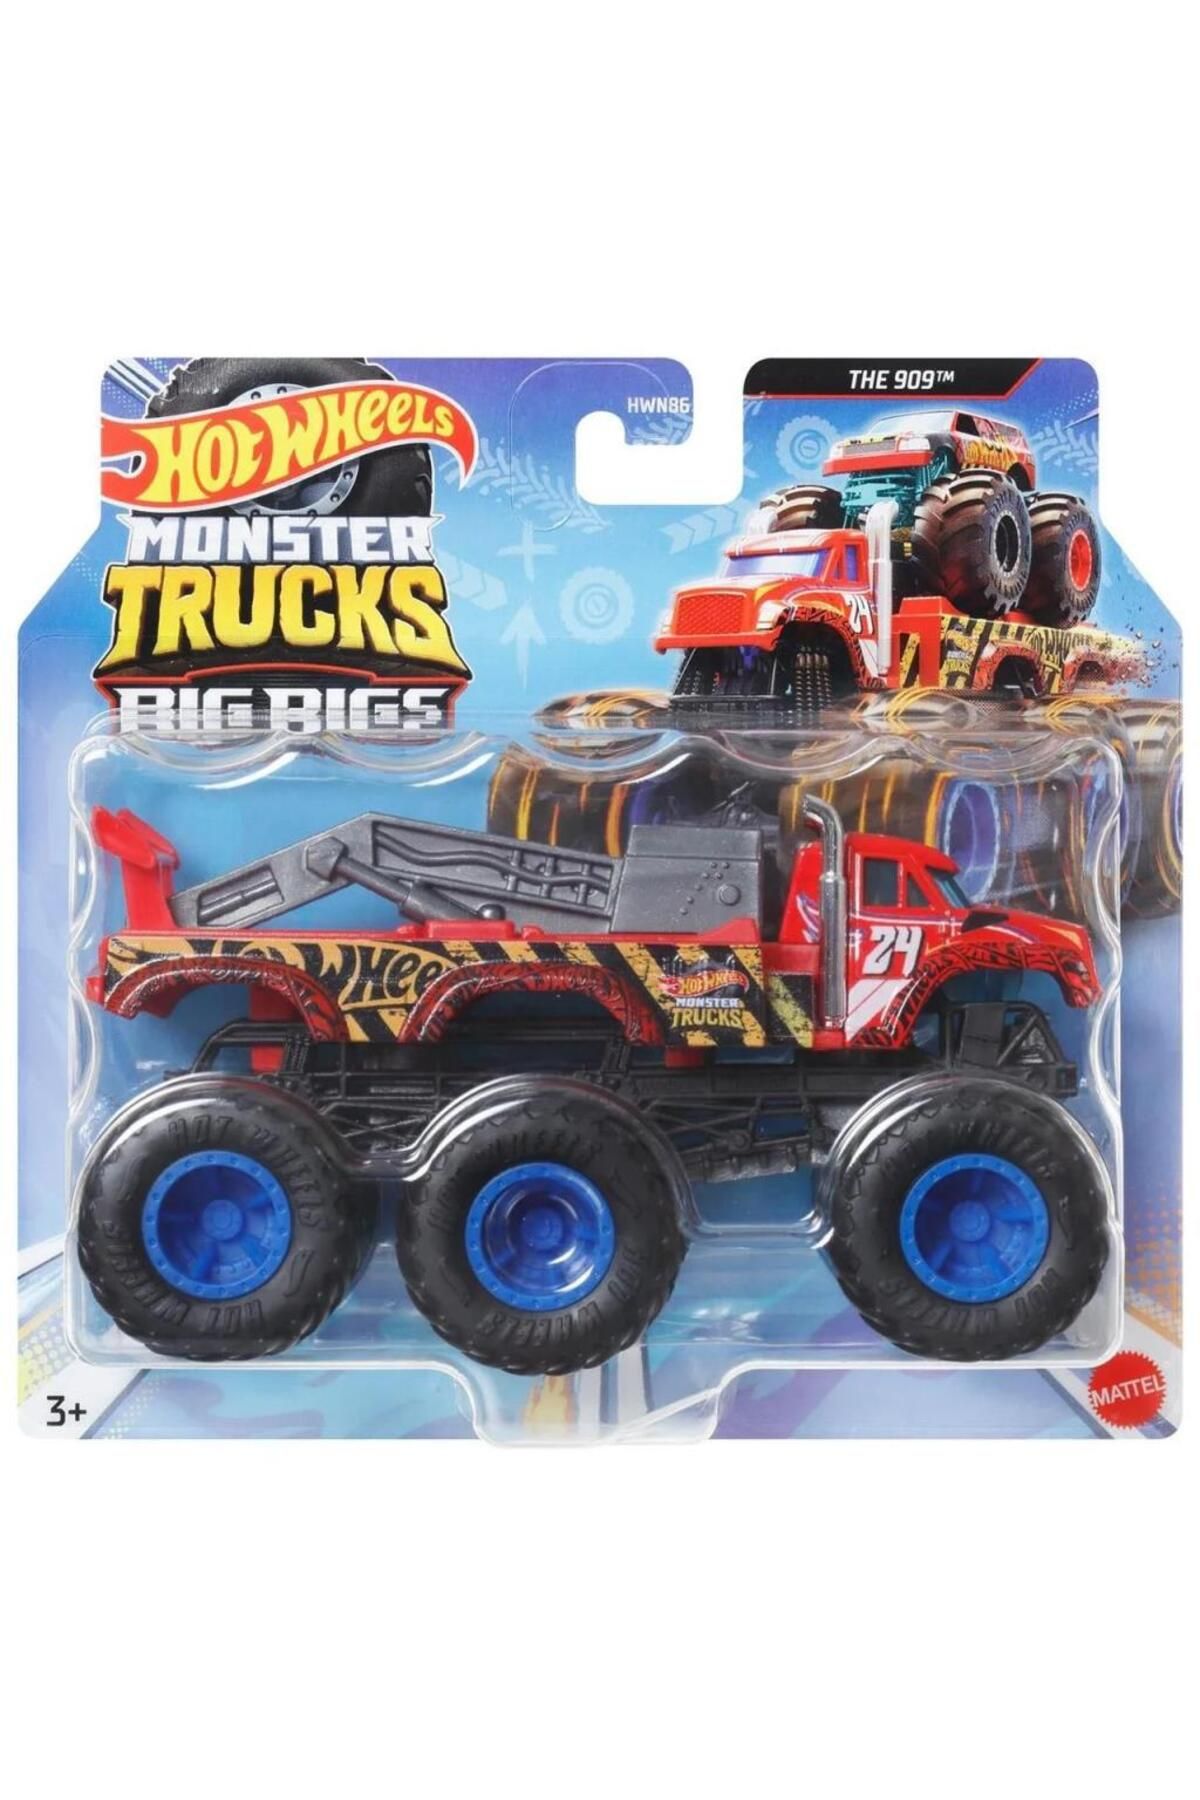 HOT WHEELS Monster Trucks 1:64 Çekici Arabalar THE 909 HWN86 - HWN90